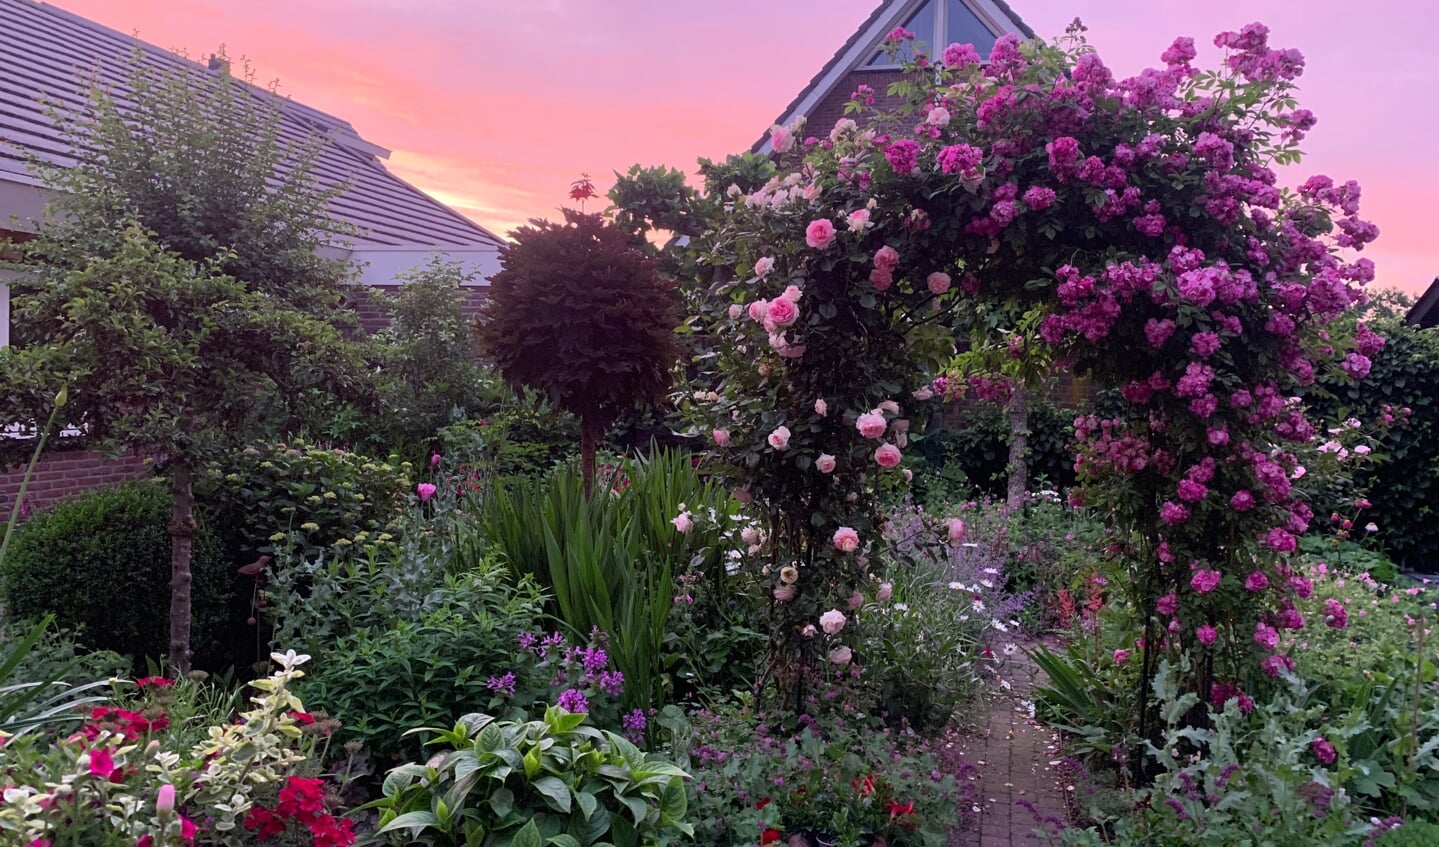 Het is onze achtertuin bij zonsondergang.
De foto is gemaakt op 22 juni 2021.
Plaats: Bekestere 7 te Putten.